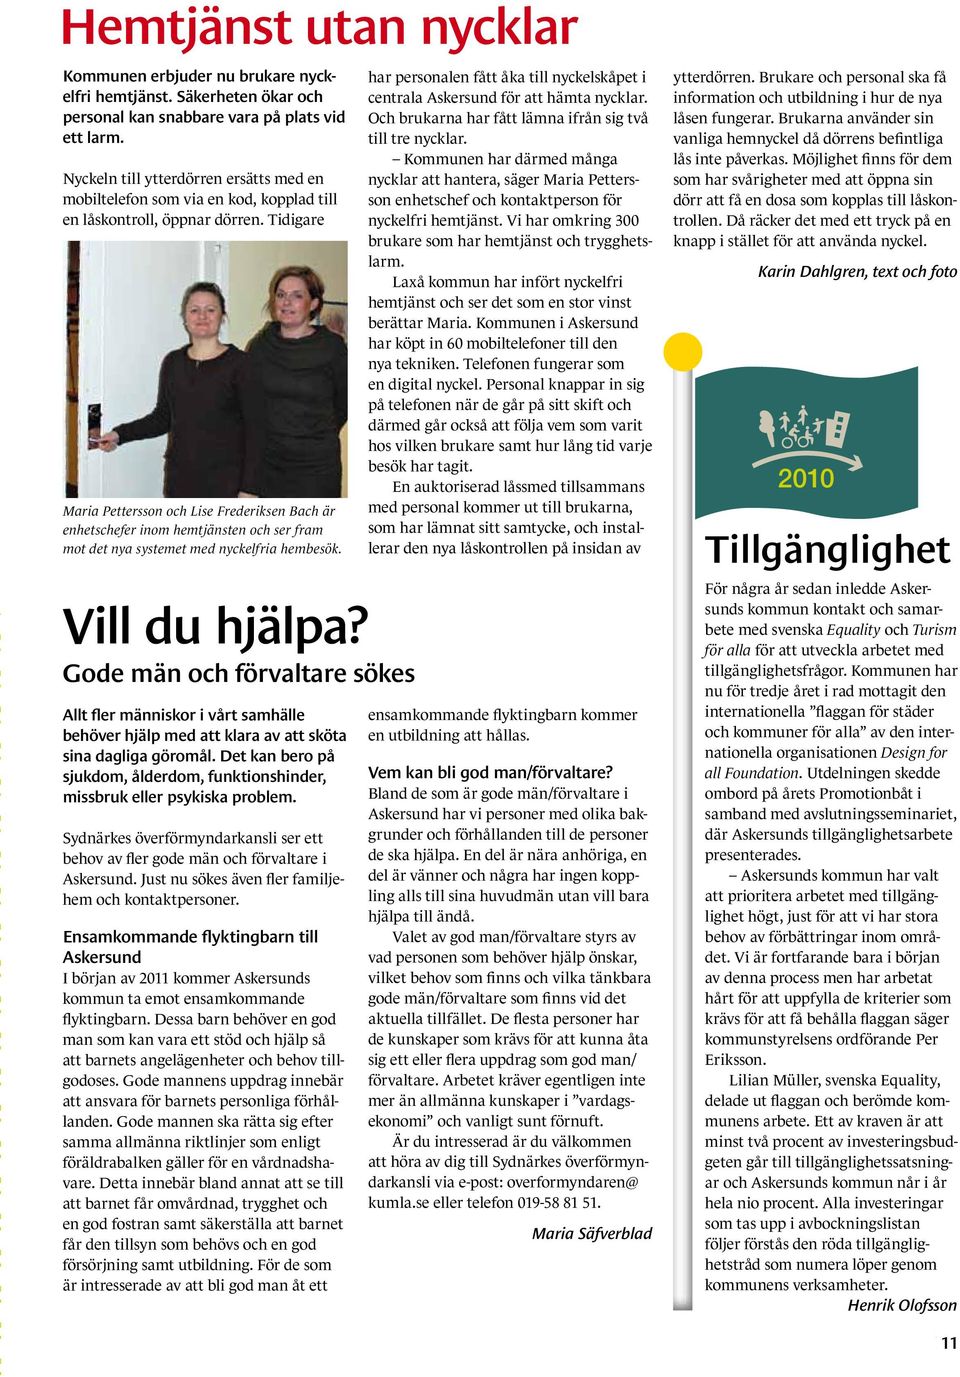 Tidigare Maria Pettersson och Lise Frederiksen Bach är enhetschefer inom hemtjänsten och ser fram mot det nya systemet med nyckelfria hembesök.